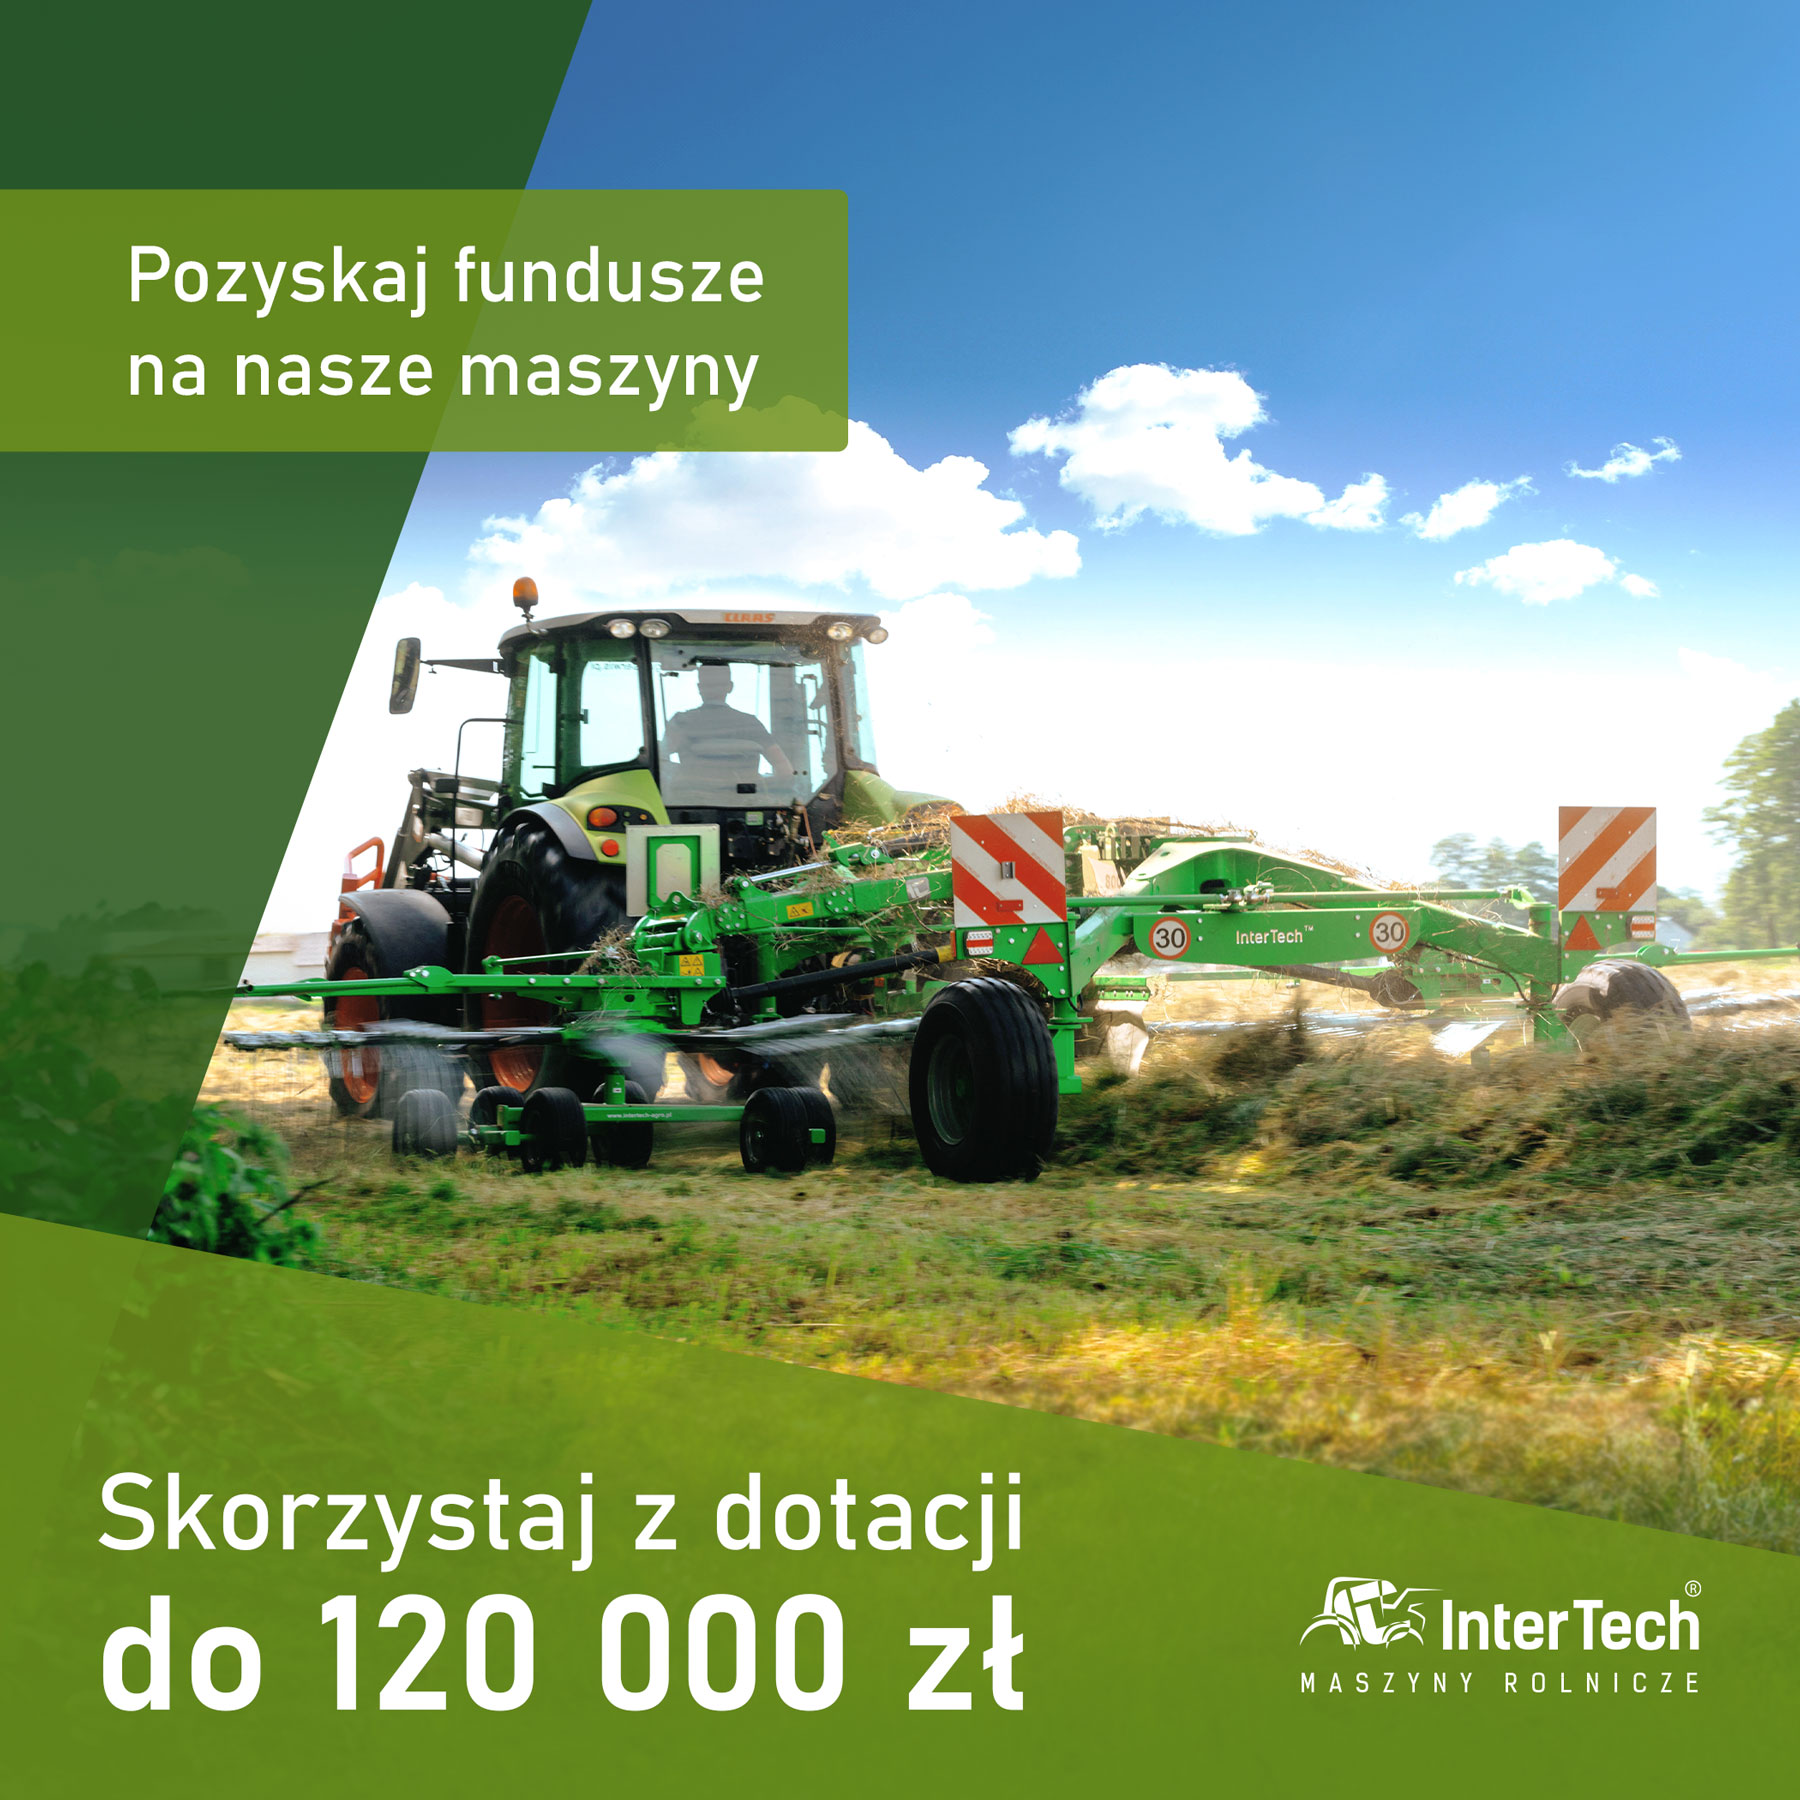 Pozyskaj fundusze na nasze maszyny – skorzystaj z dotacji do 120 000 zł.